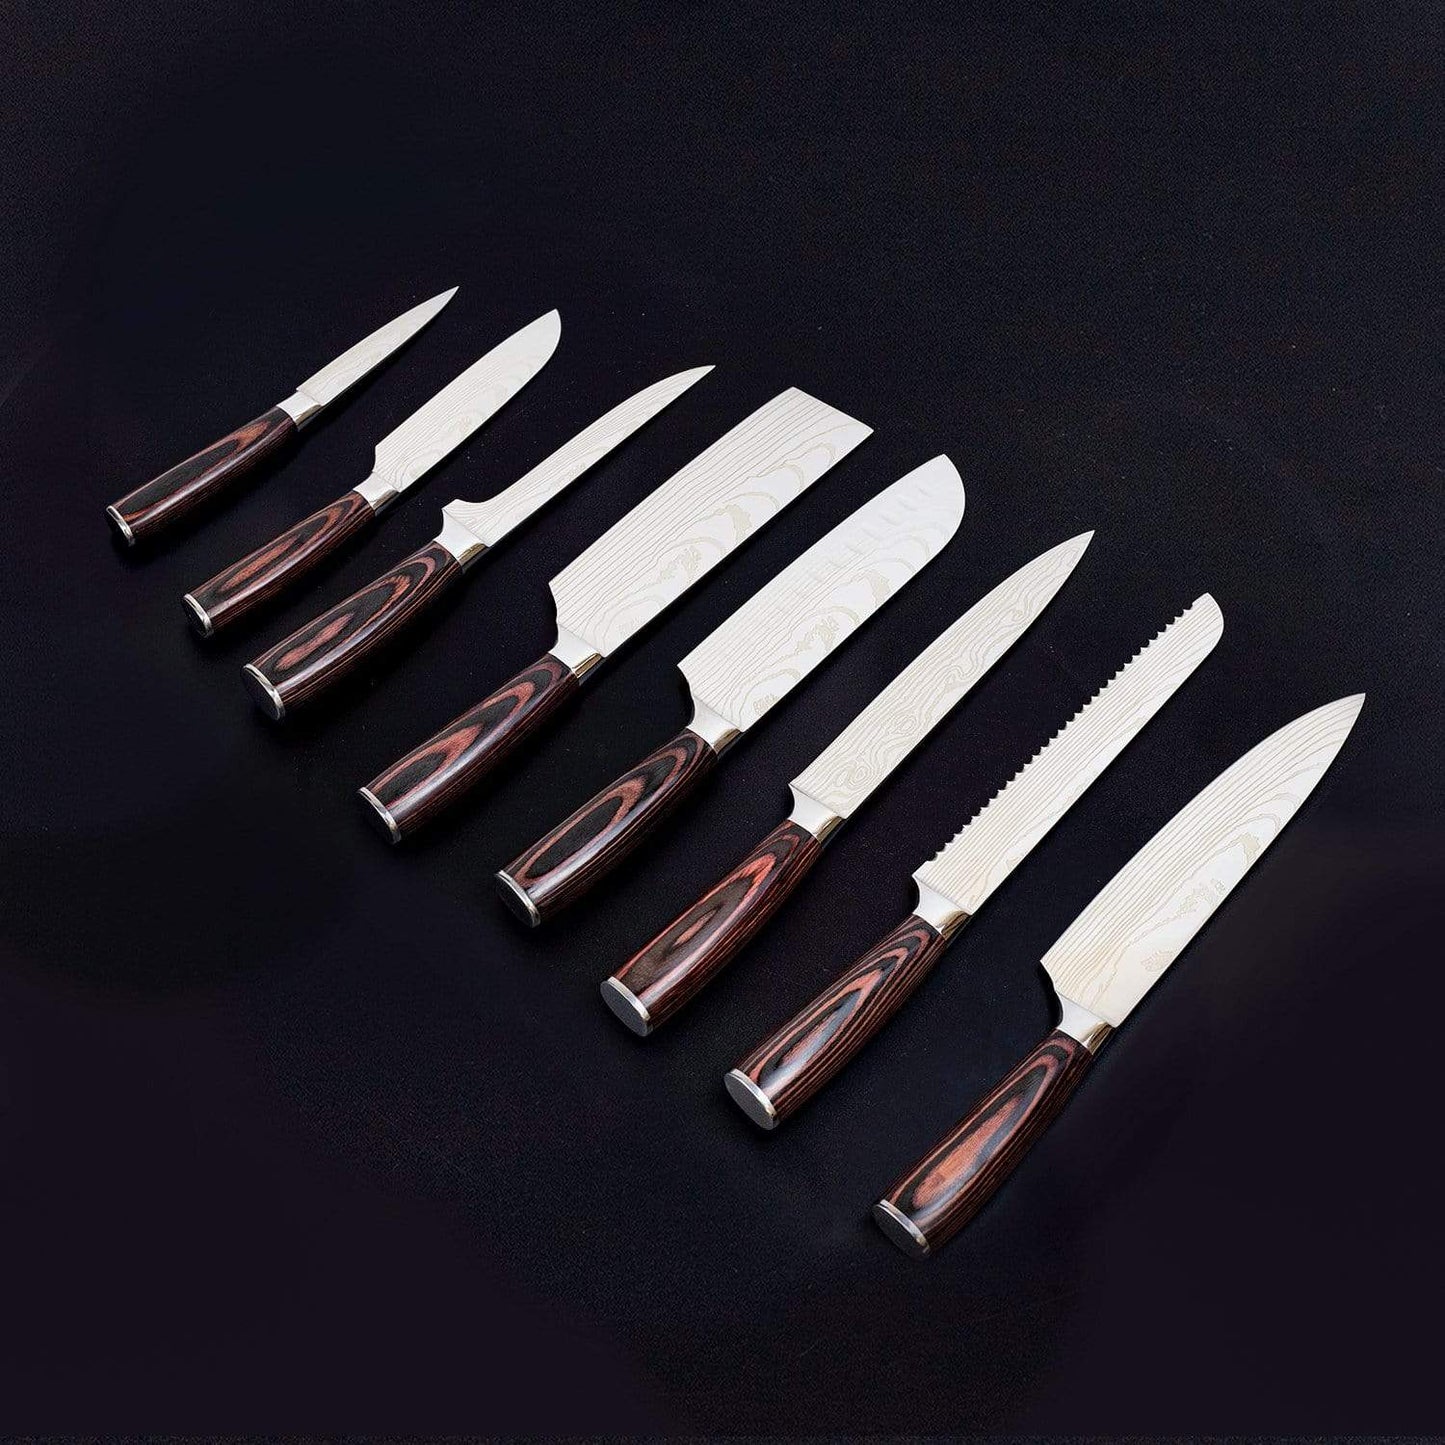 Ensemble de 8 couteaux Zeekka Professional dans un coffret cadeau